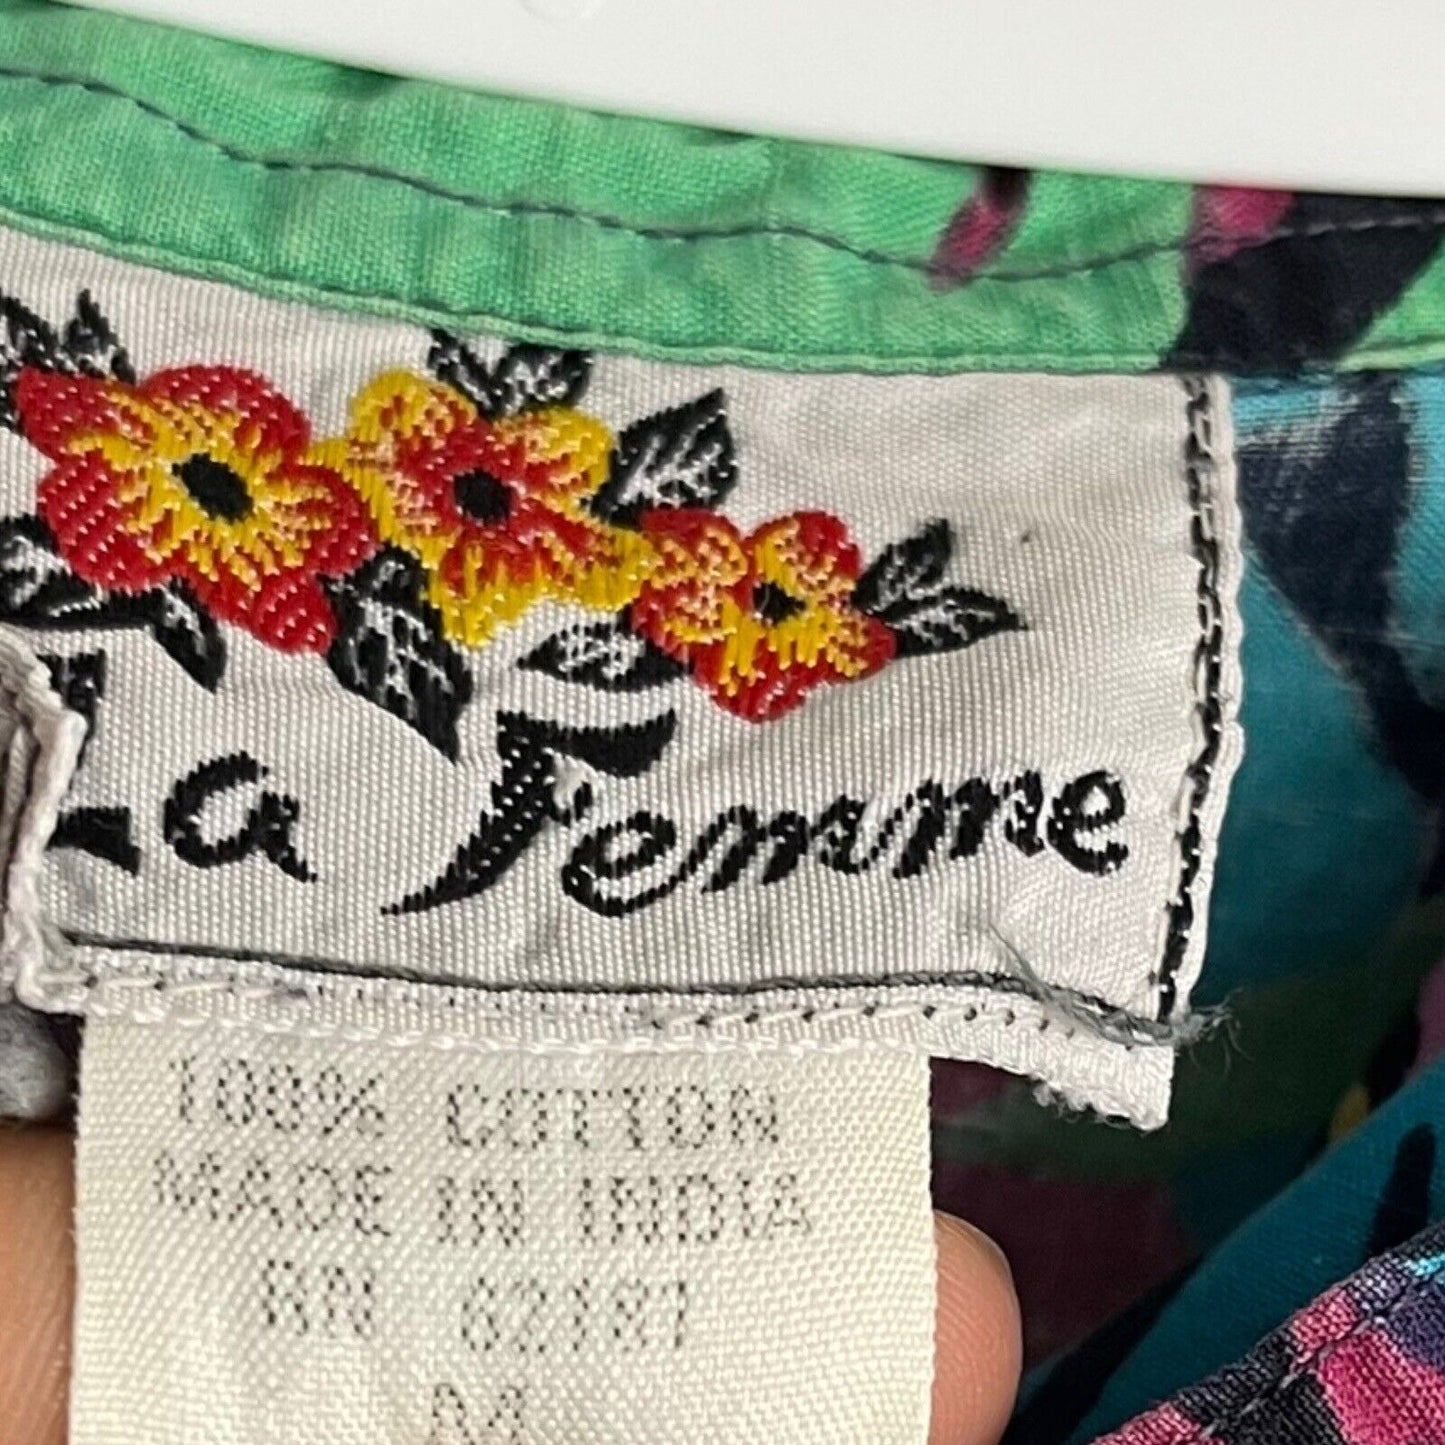 La Femme Button Up Shirt Women's Medium Multicolor Tropical Boyfriend VTG Top